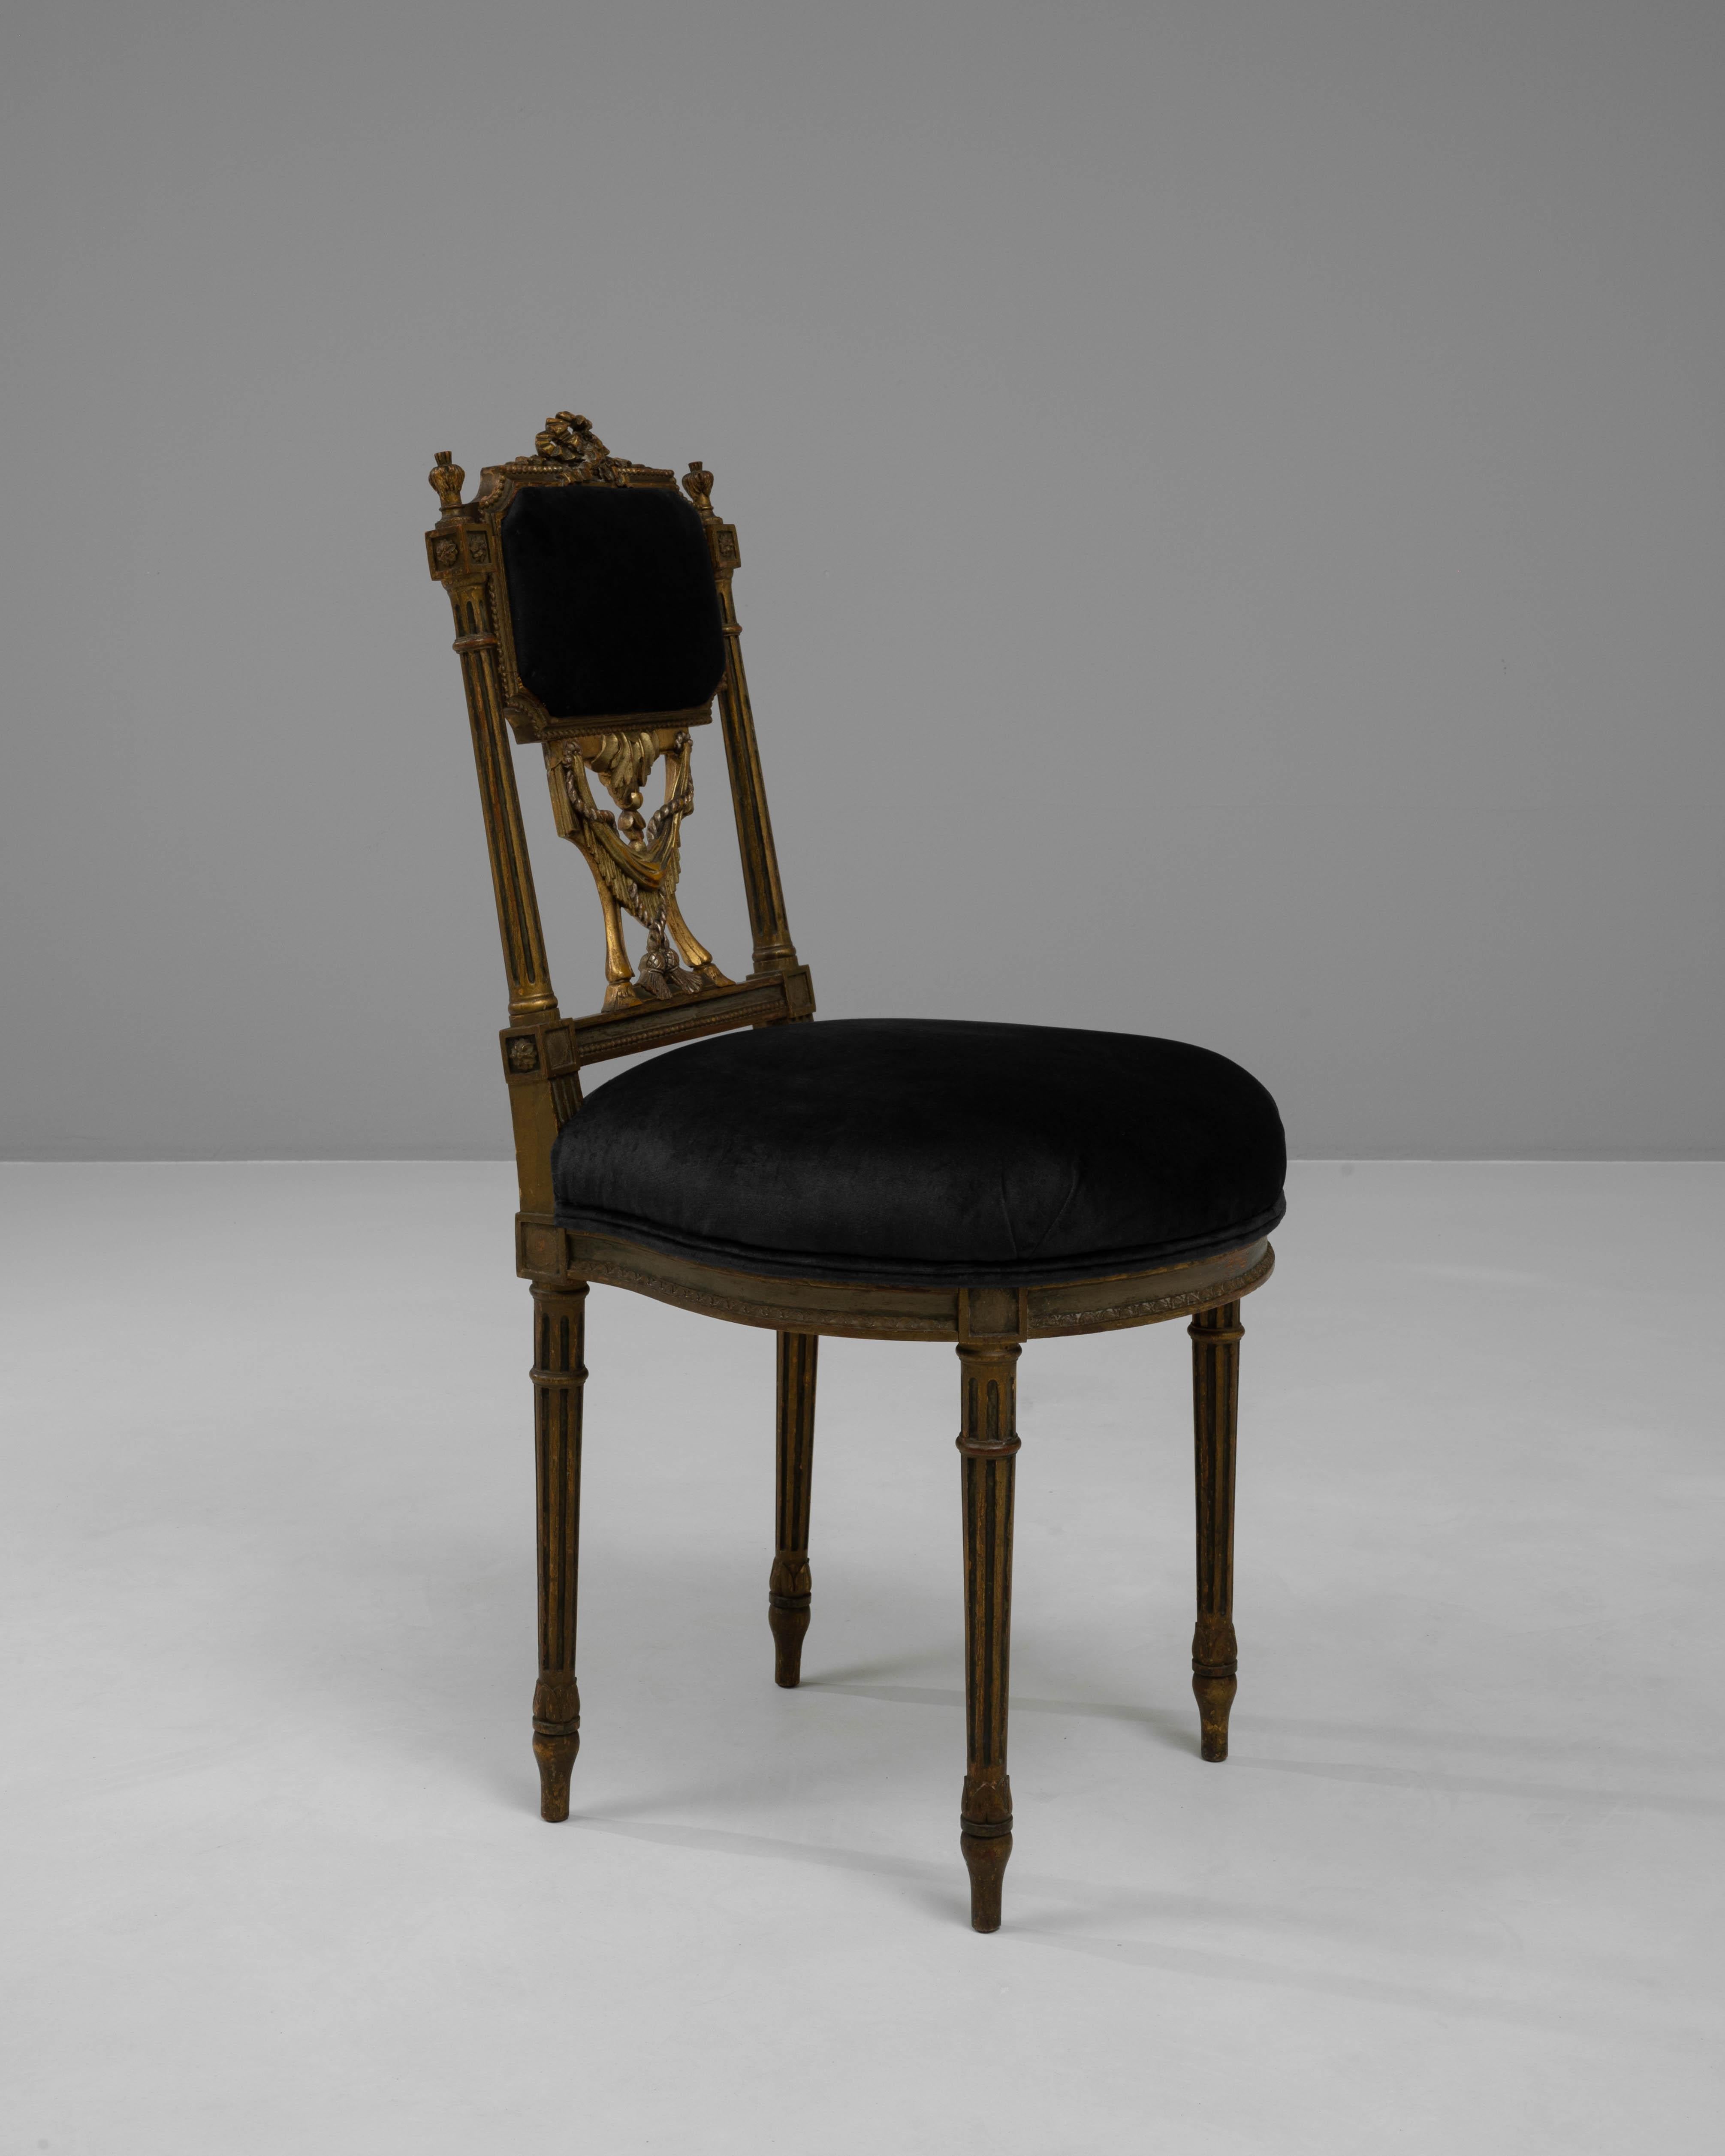 Entrez dans un monde d'opulence royale avec cette magnifique chaise en bois française du XIXe siècle, une pièce qui incarne la grandeur du design français historique. Cette chaise présente un cadre exquis avec des sculptures dorées complexes,